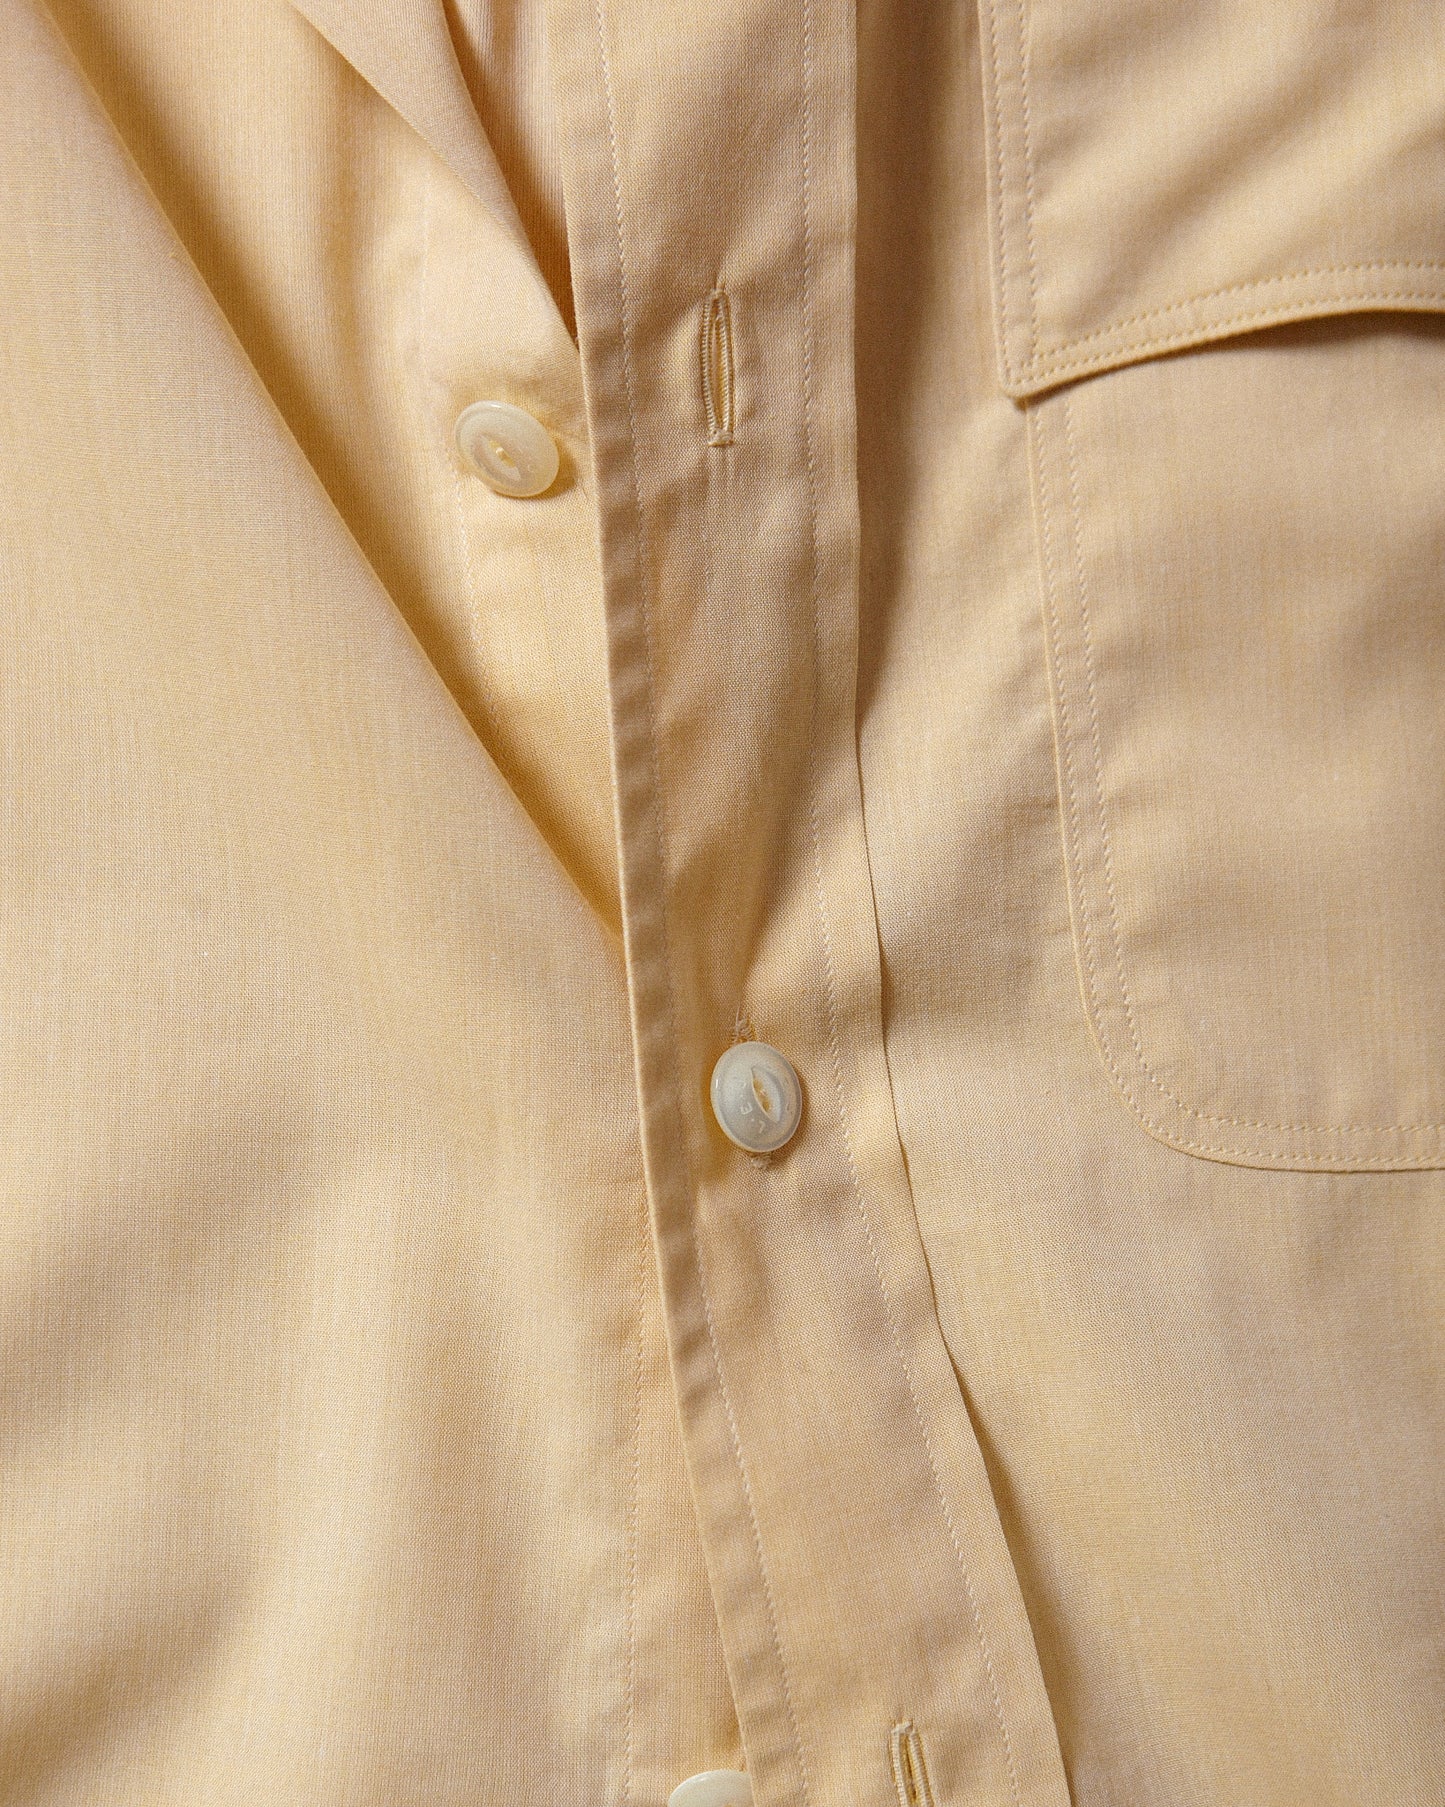 NU-00002-L3 - 1 Pocket Officer's Shirt